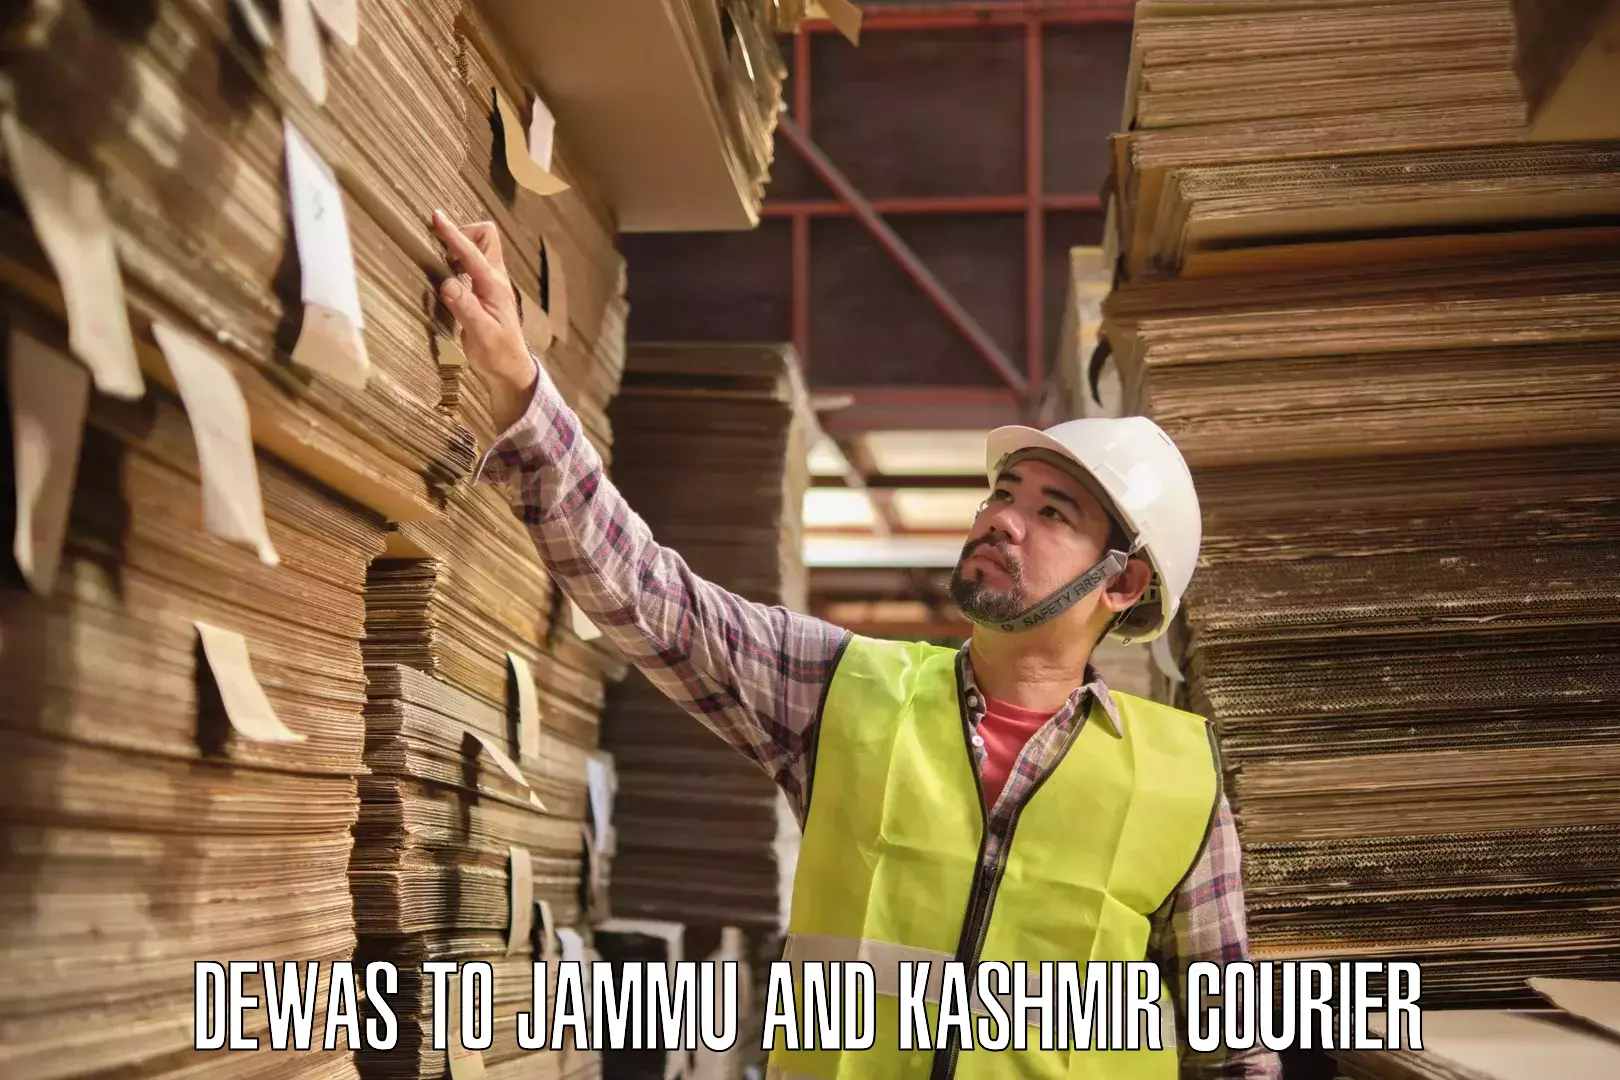 24-hour courier services Dewas to Srinagar Kashmir